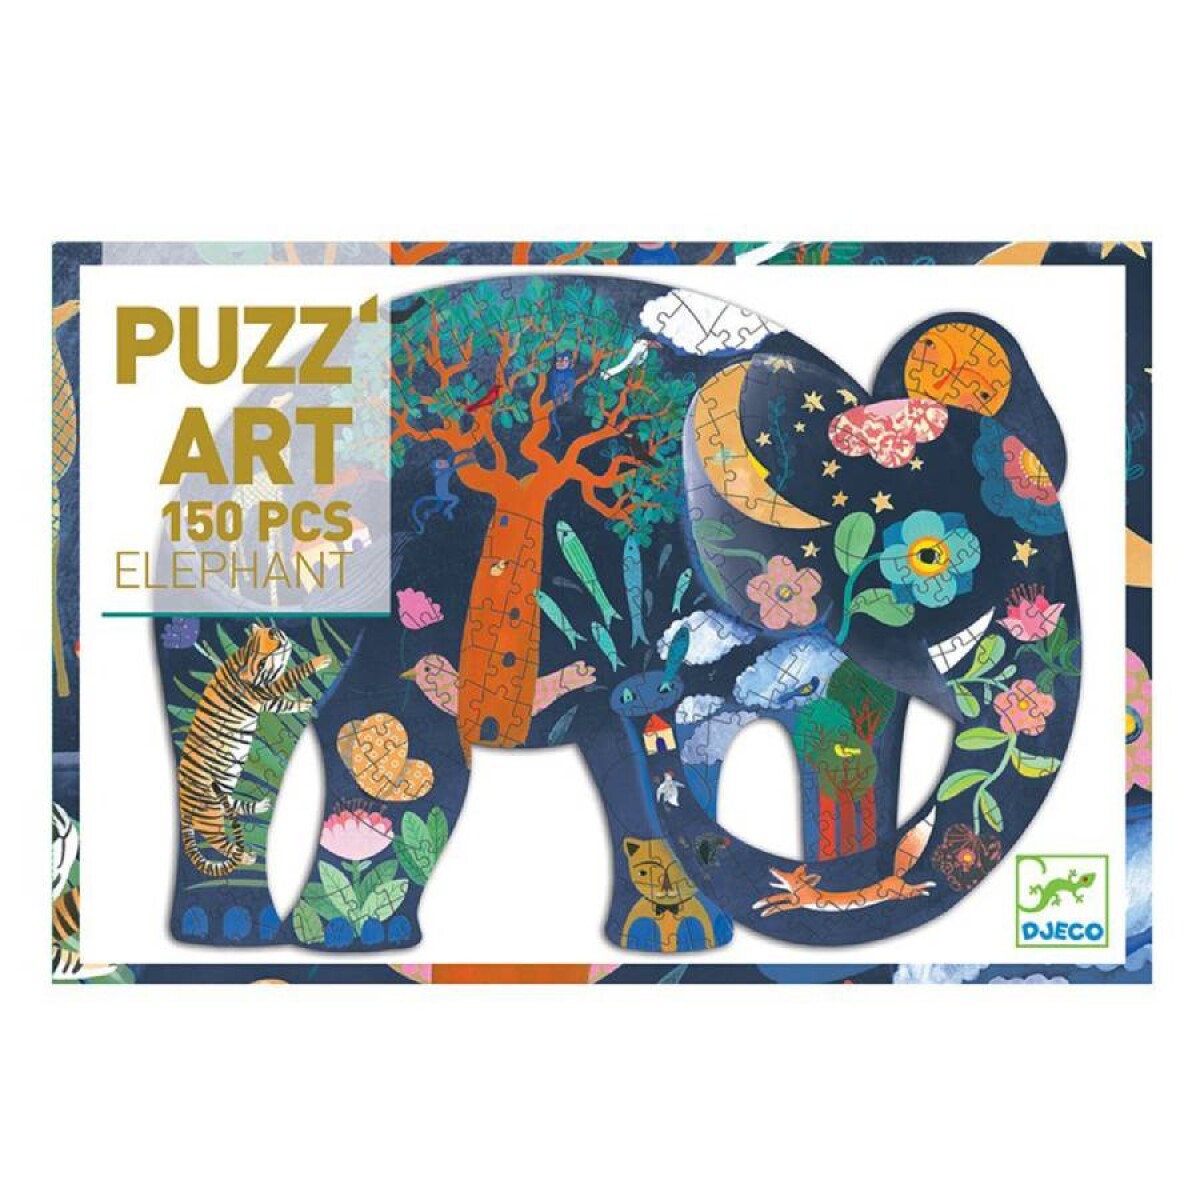 Puzz'art de elefante by Djeco 150 pzas 